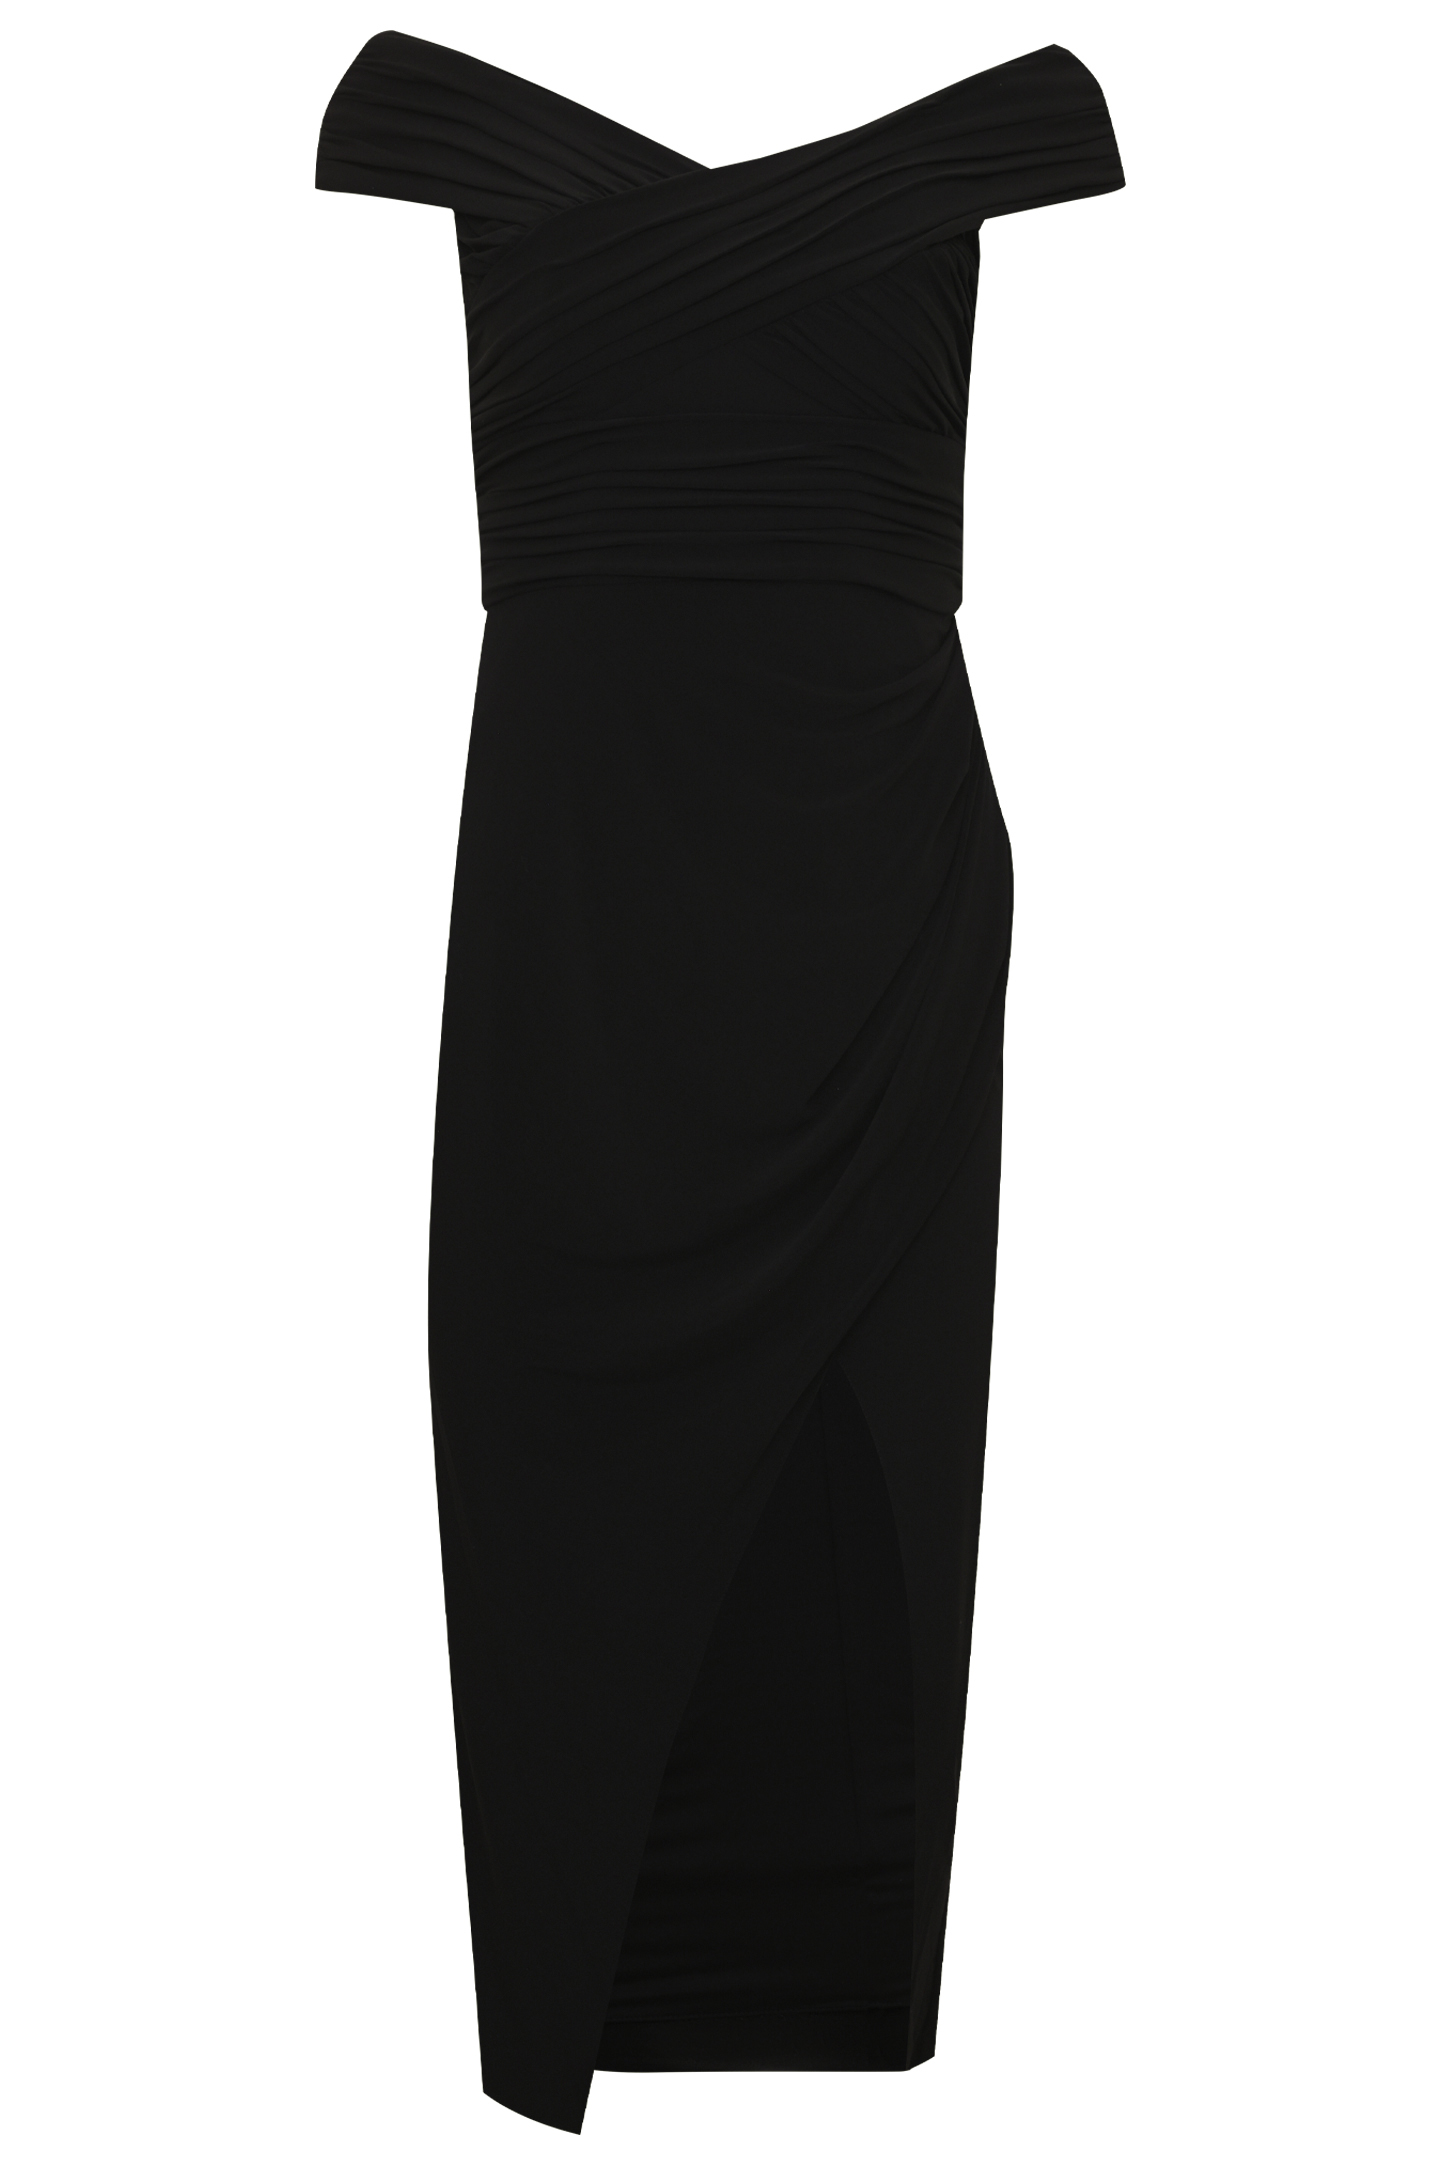 Платье SELF PORTRAIT RS22-110, цвет: Черный, Женский